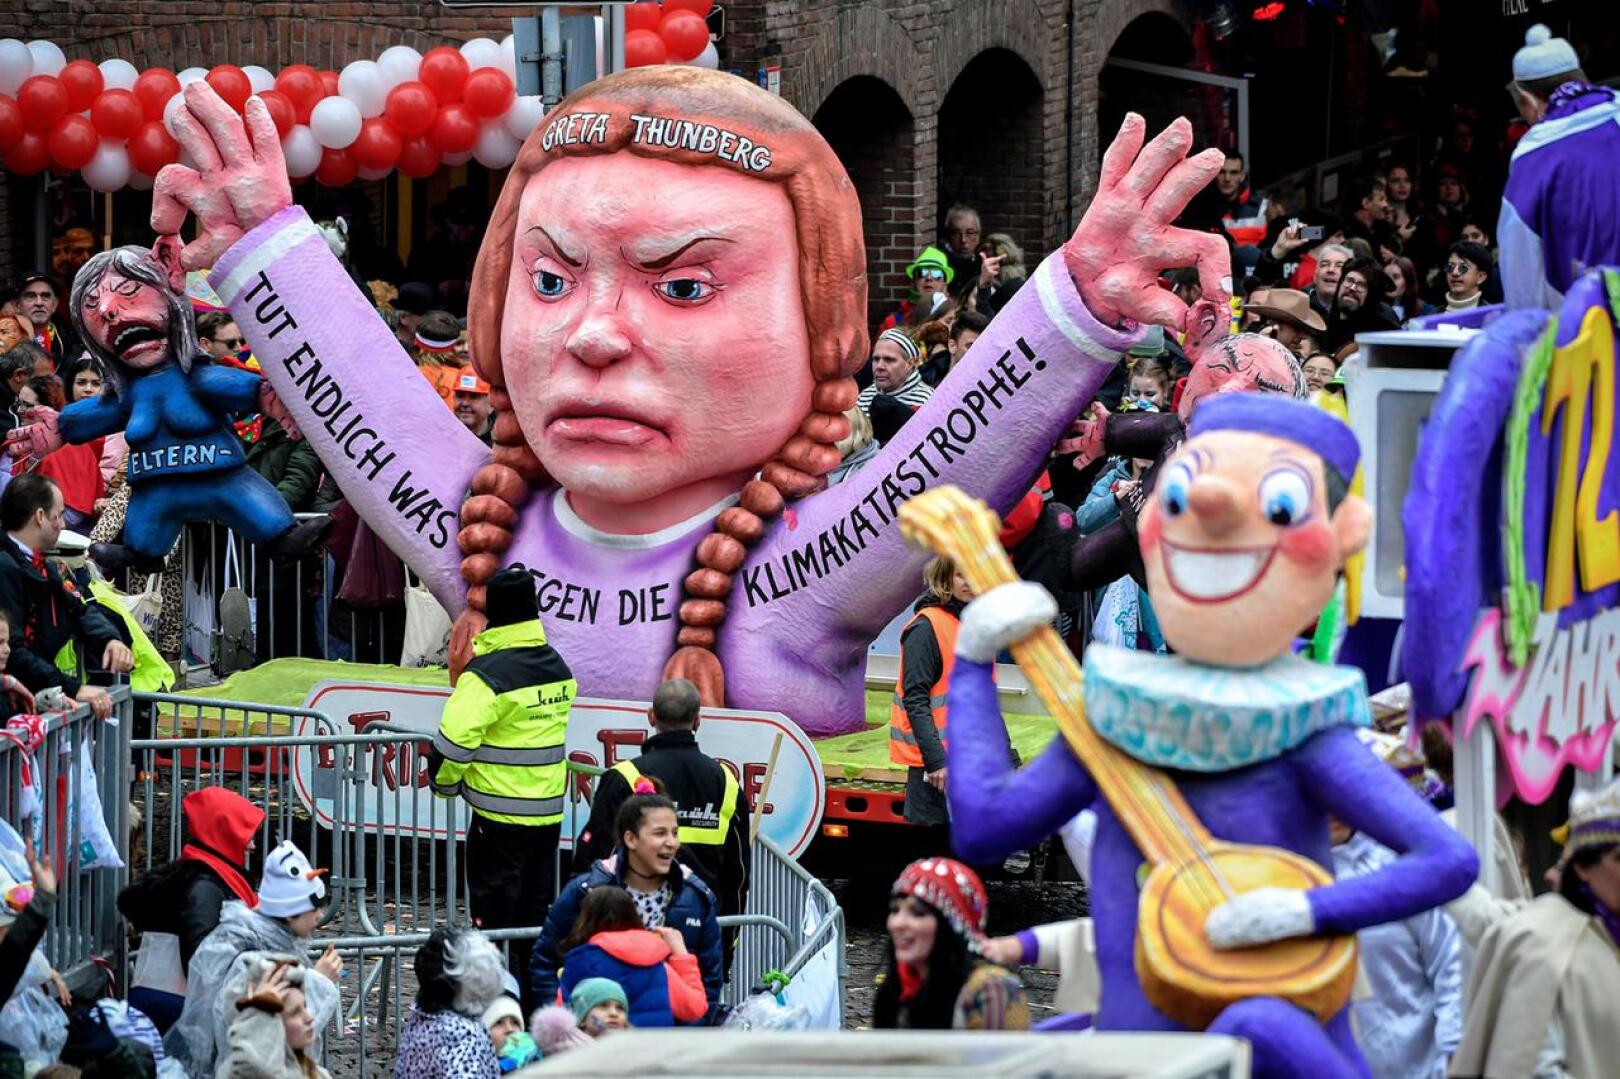 Saksan Düsseldorfissa pidetyssä "ruusumaanantain" karnevaaliparaatissa oli esillä ilmastoaktivisti Greta Thunbergia esittävä hahmo. Volkmarsenissa yliajaja ajoi saksalaismedian mukaan tahallaan poliisin eristämälle paraatialueelle.